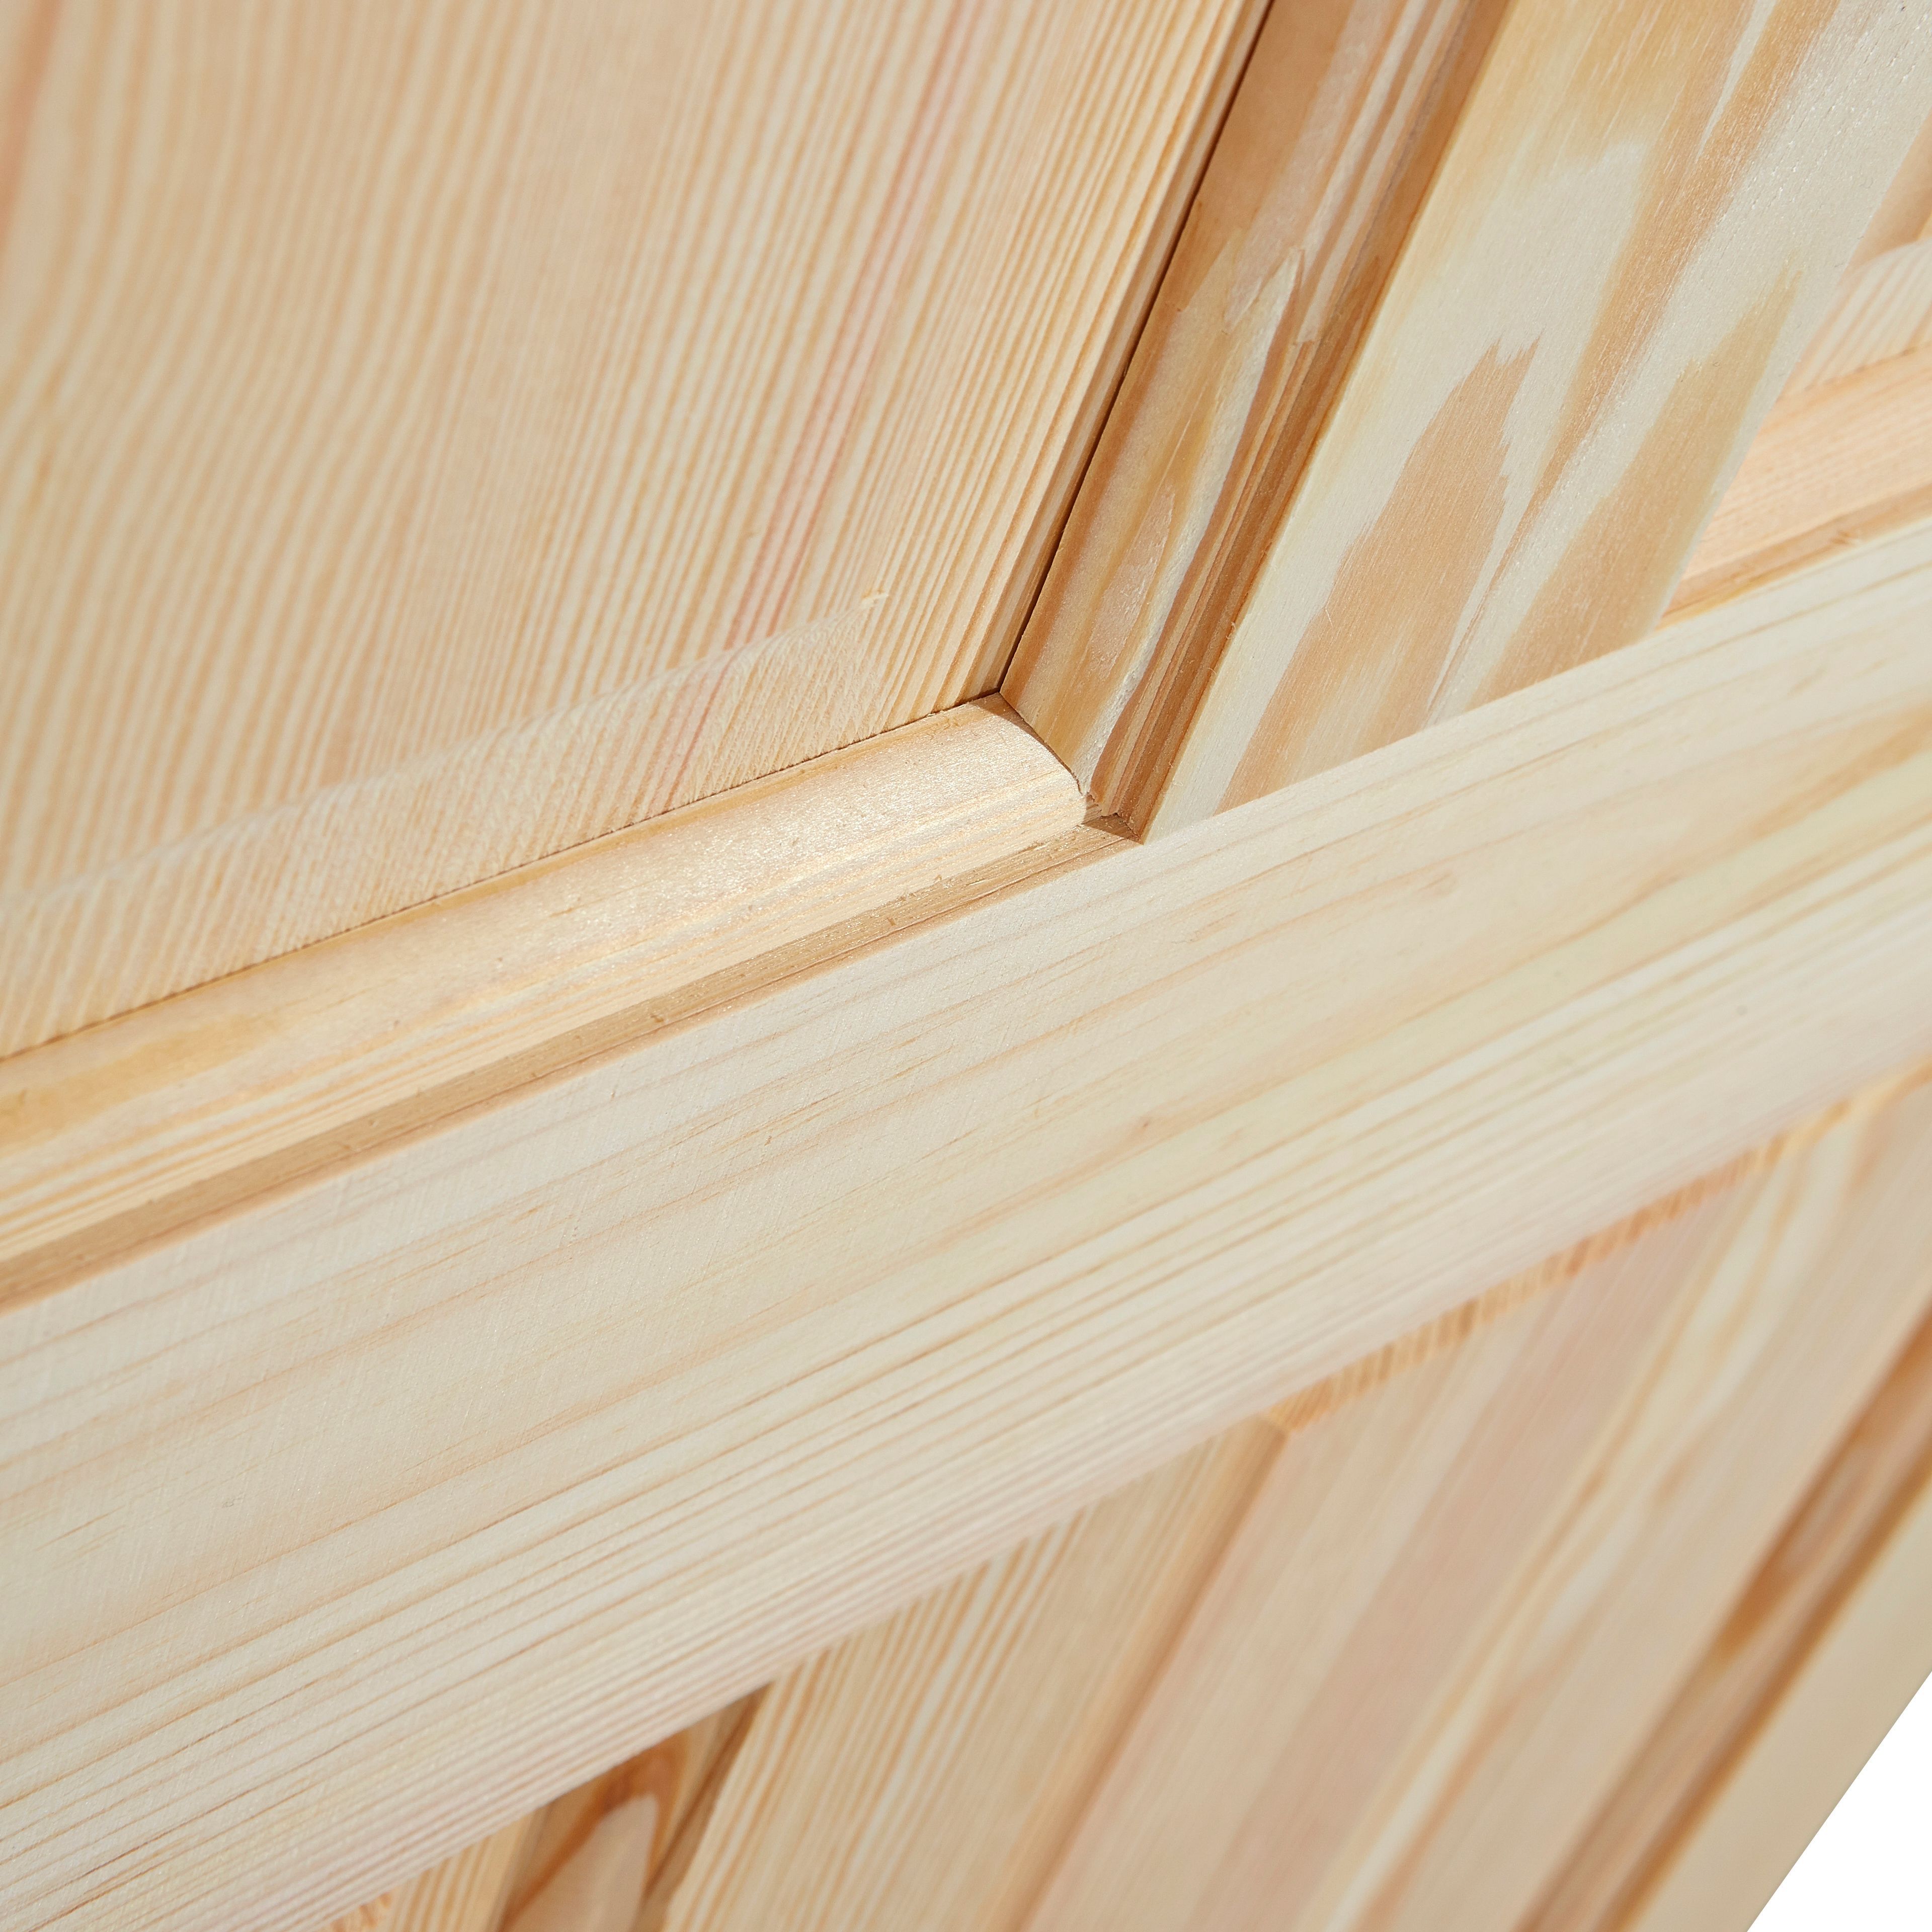 4 panel Unglazed Victorian Pine veneer Internal Clear pine Door, (H)1981mm (W)686mm (T)35mm